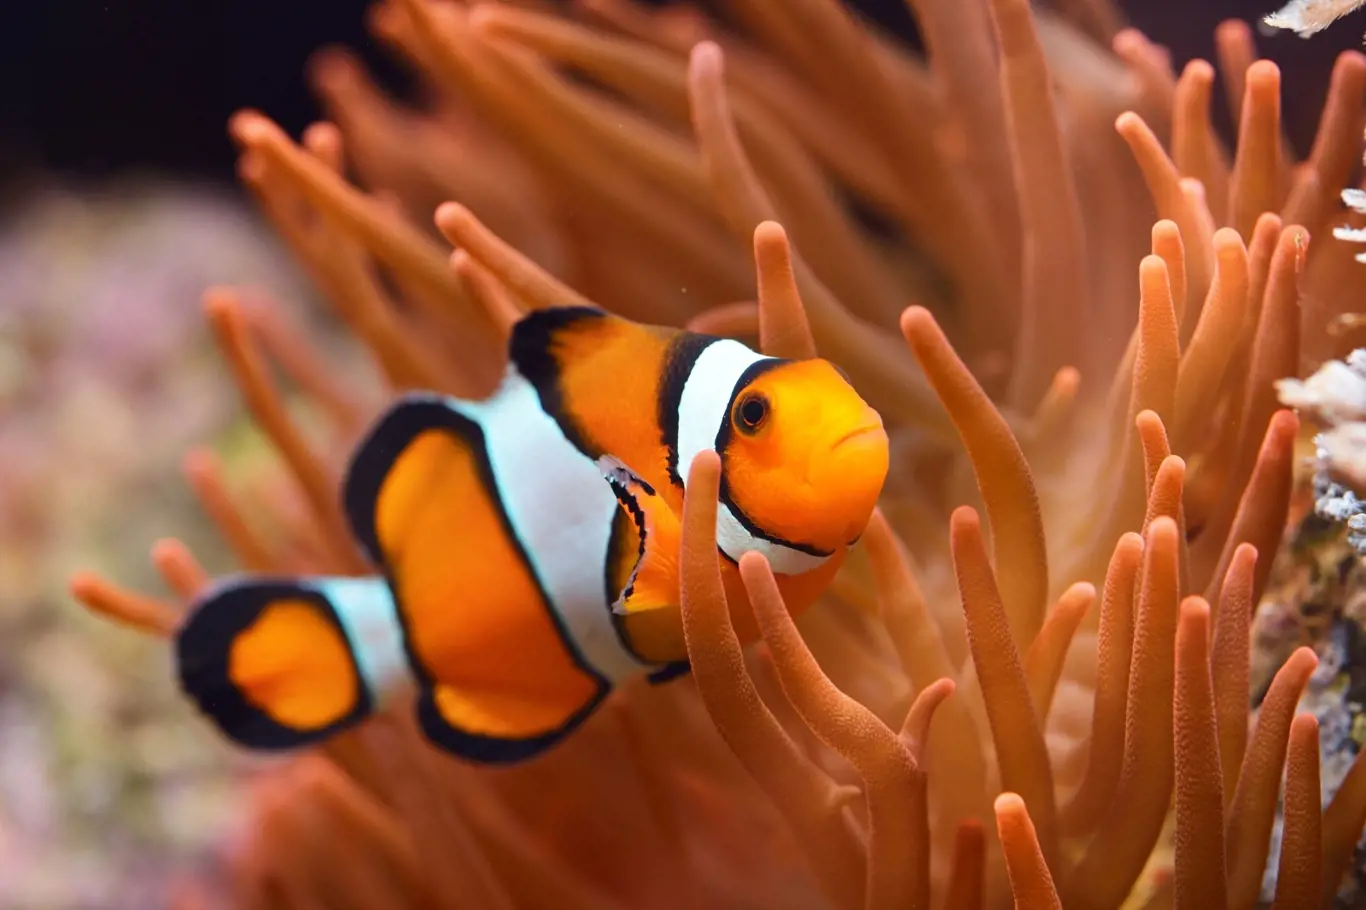 Díky mořskému akváriu můžeme pozorovat nádherné druhy ryb.